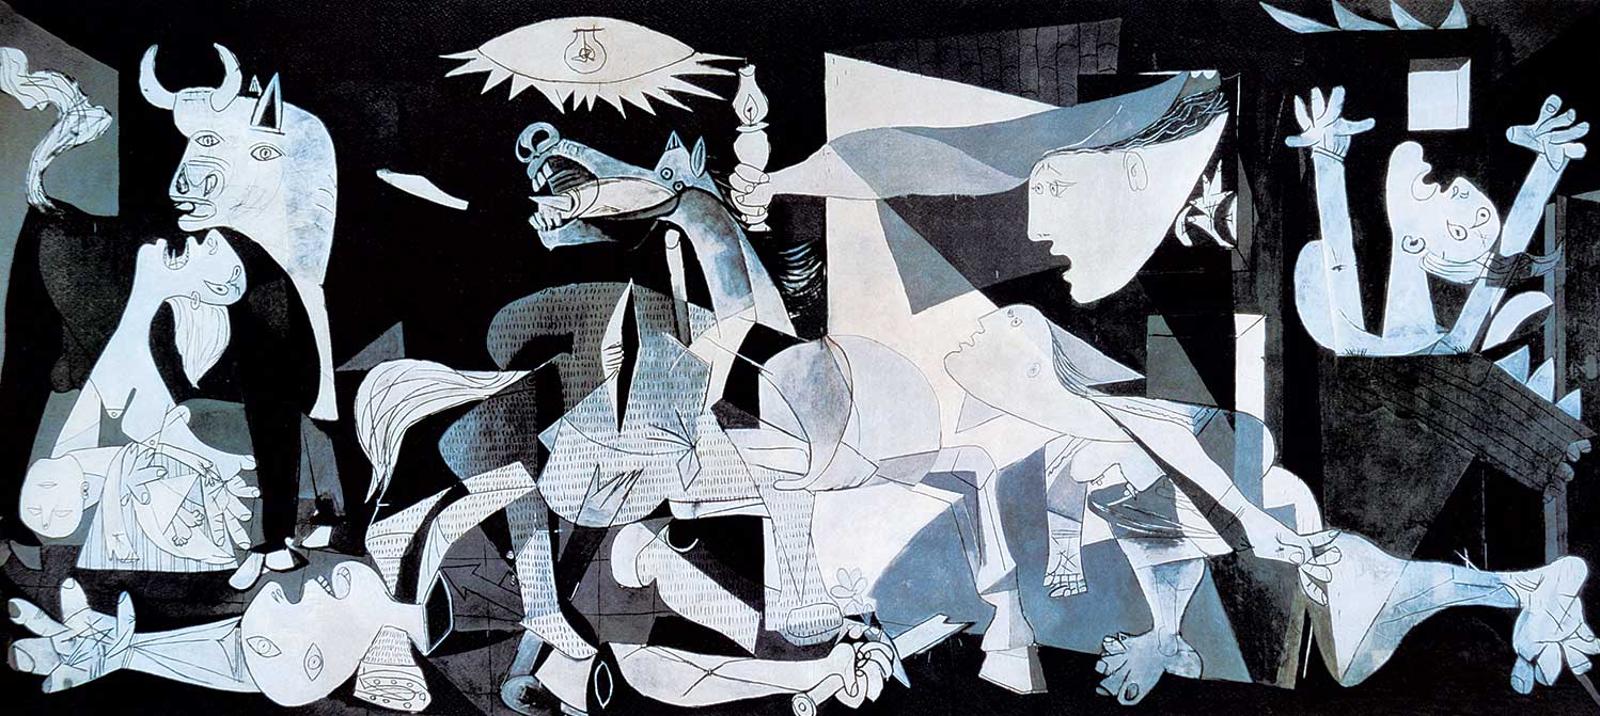 Pablo Ruiz Picasso (1881-1973) - Guernica